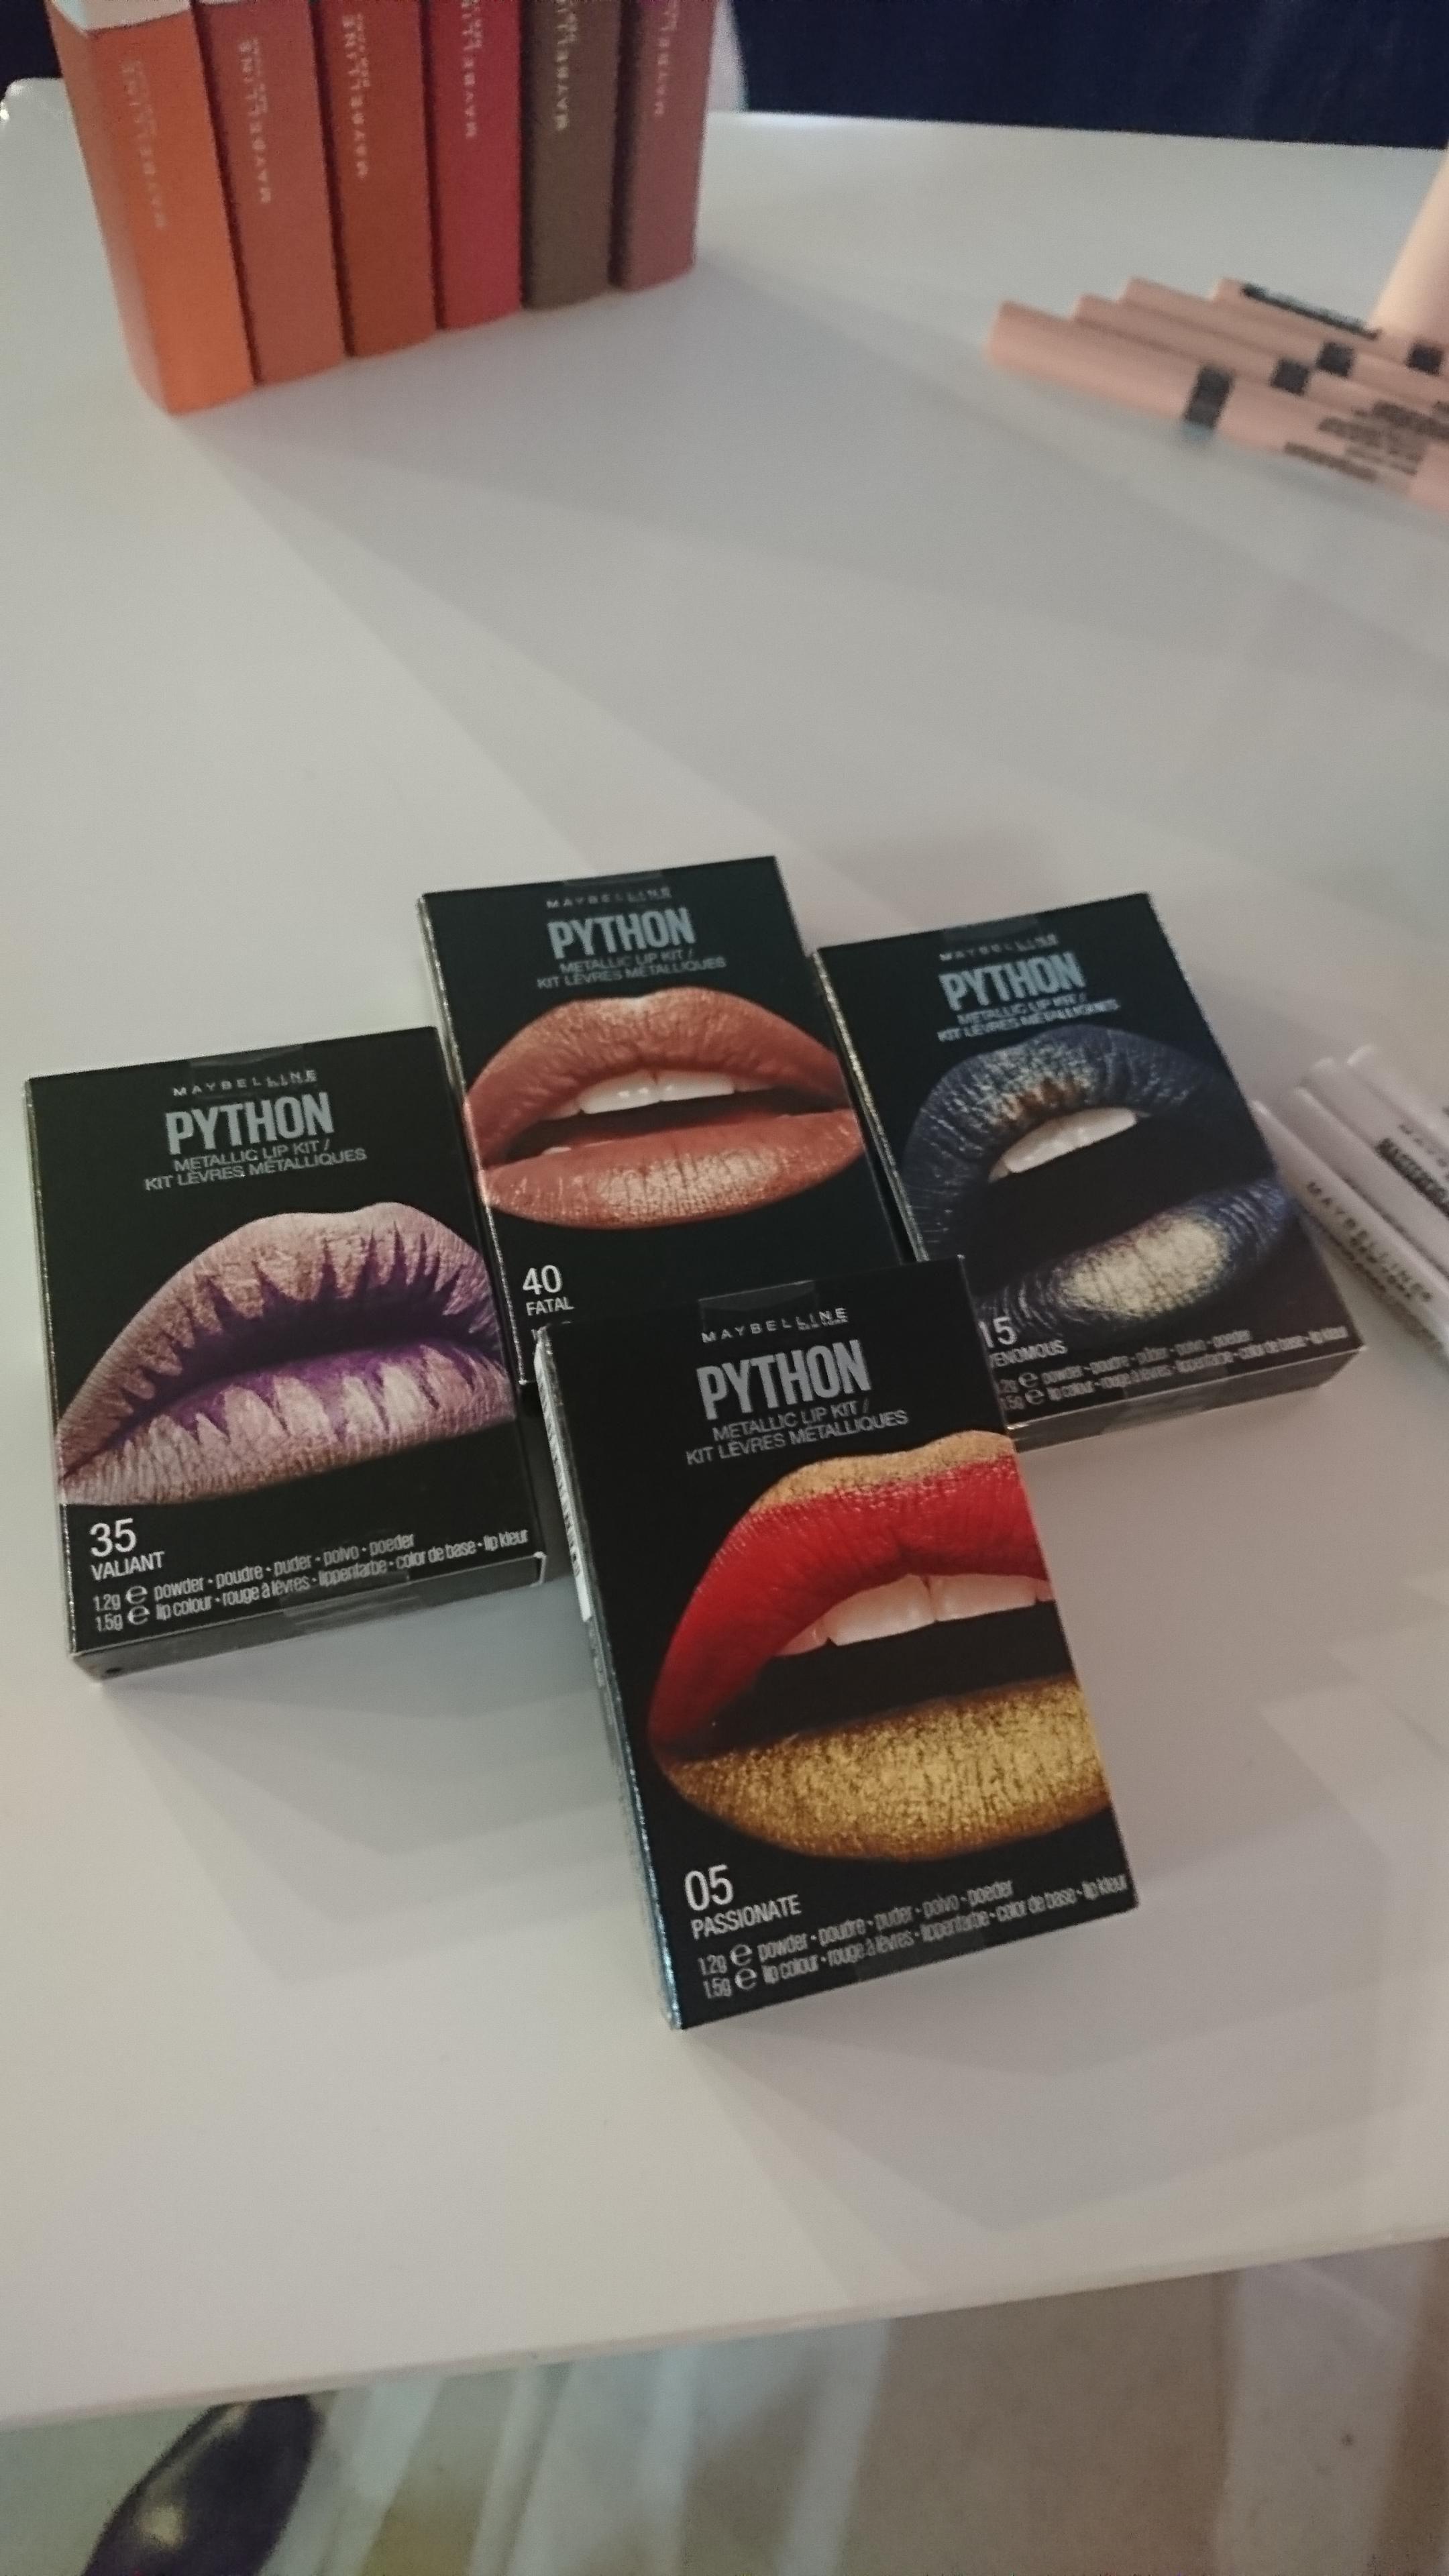 Entdeckt auf der Berlin Fashion Week: Neue Lippen-Effektpuder von Maybelline #berlinfashionweek #trends #lips